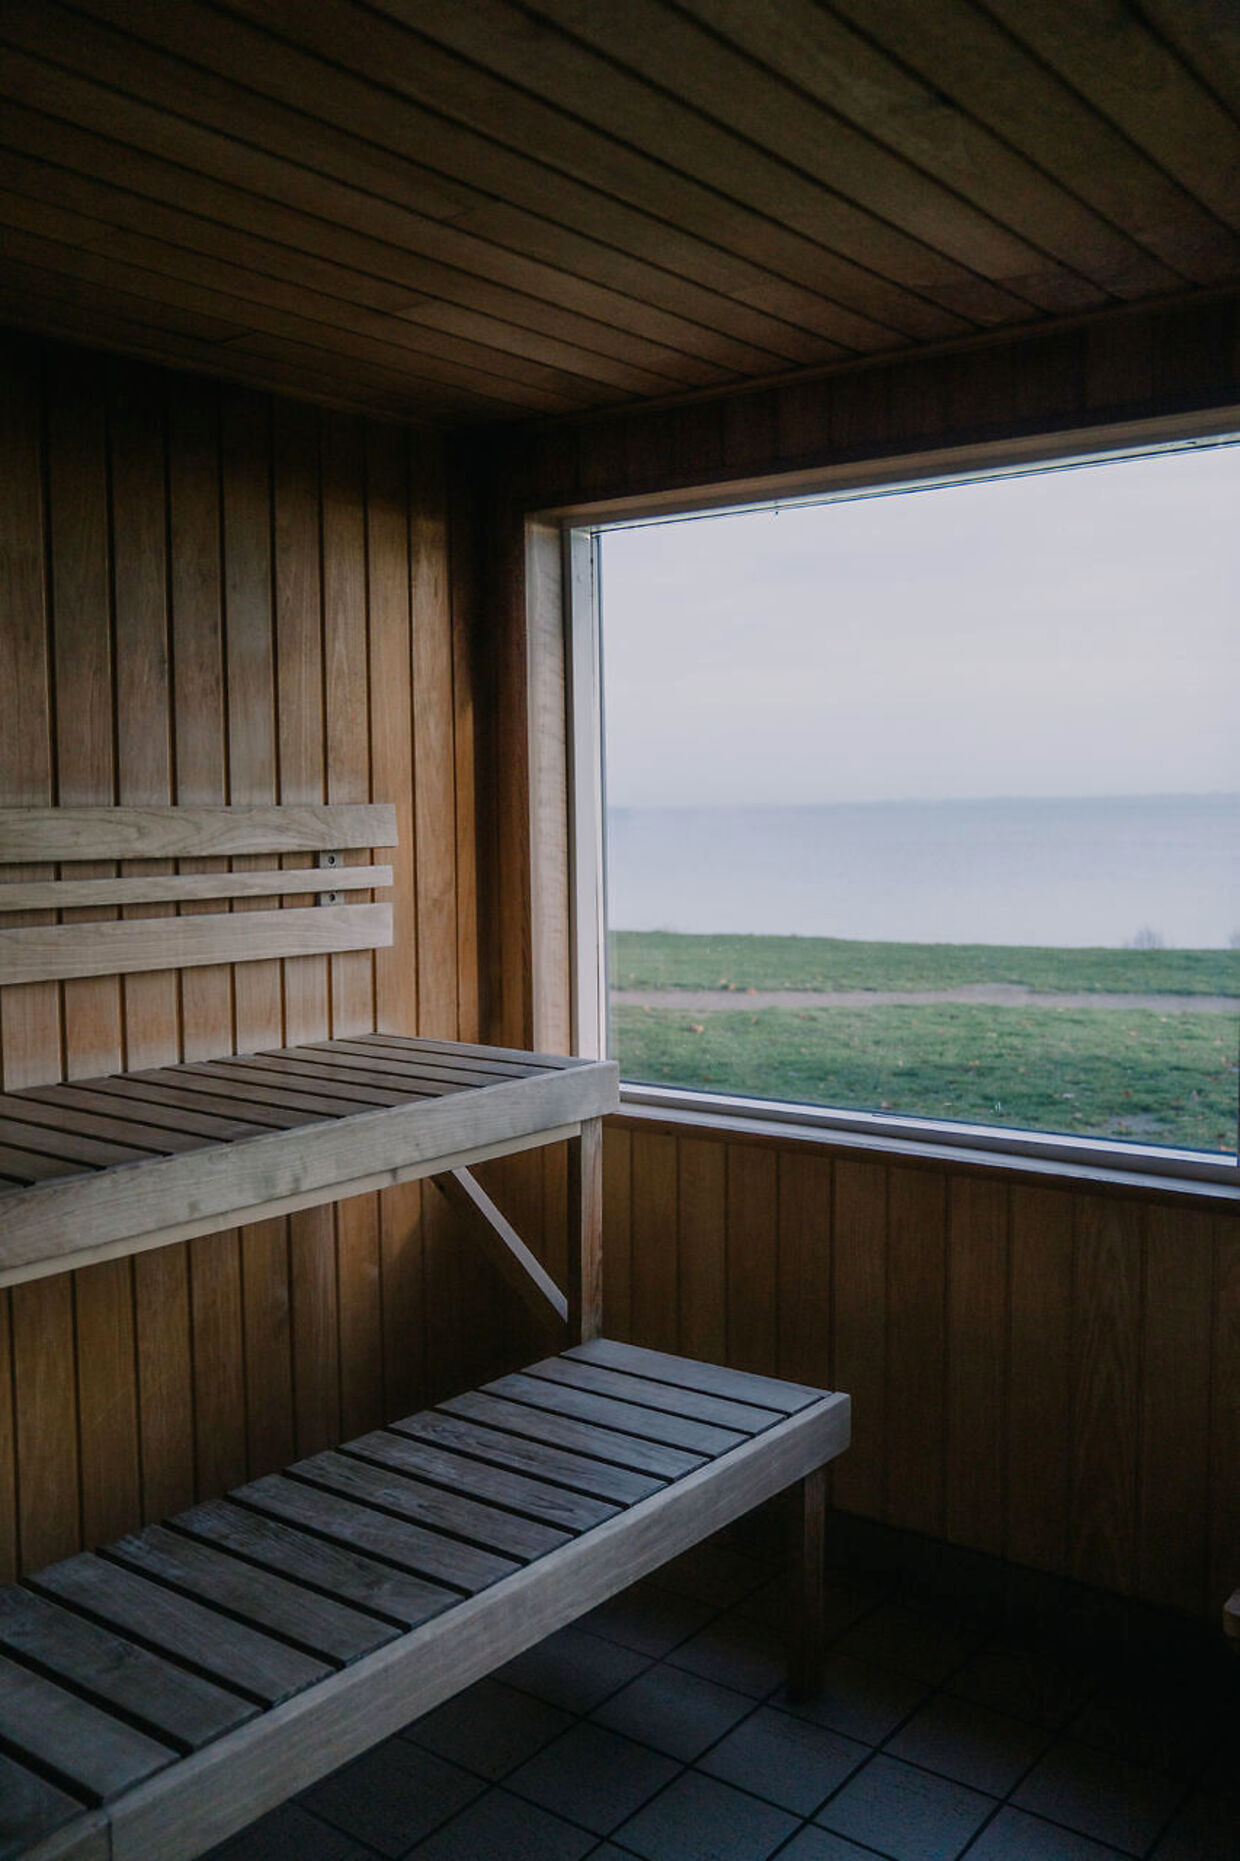 I Vedbæk Vikingelaug har man de seneste måneder kæmpet med en intern konflikt om samfundssind, elpriser og åbningen af en lækker sauna.